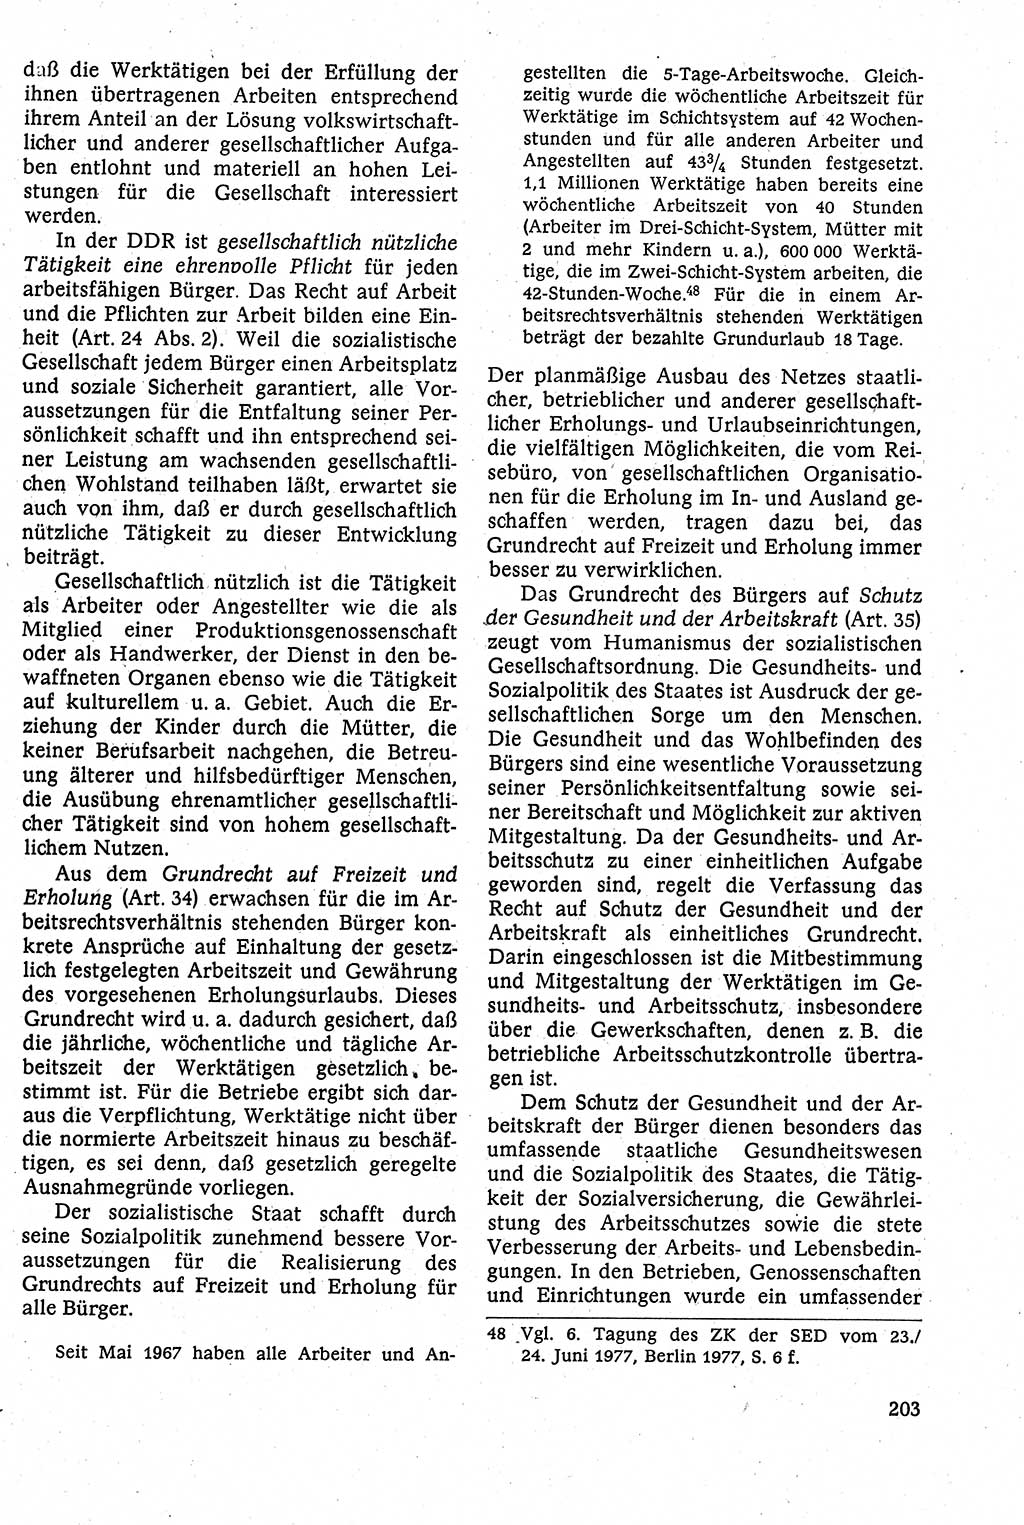 Staatsrecht der DDR [Deutsche Demokratische Republik (DDR)], Lehrbuch 1984, Seite 203 (St.-R. DDR Lb. 1984, S. 203)